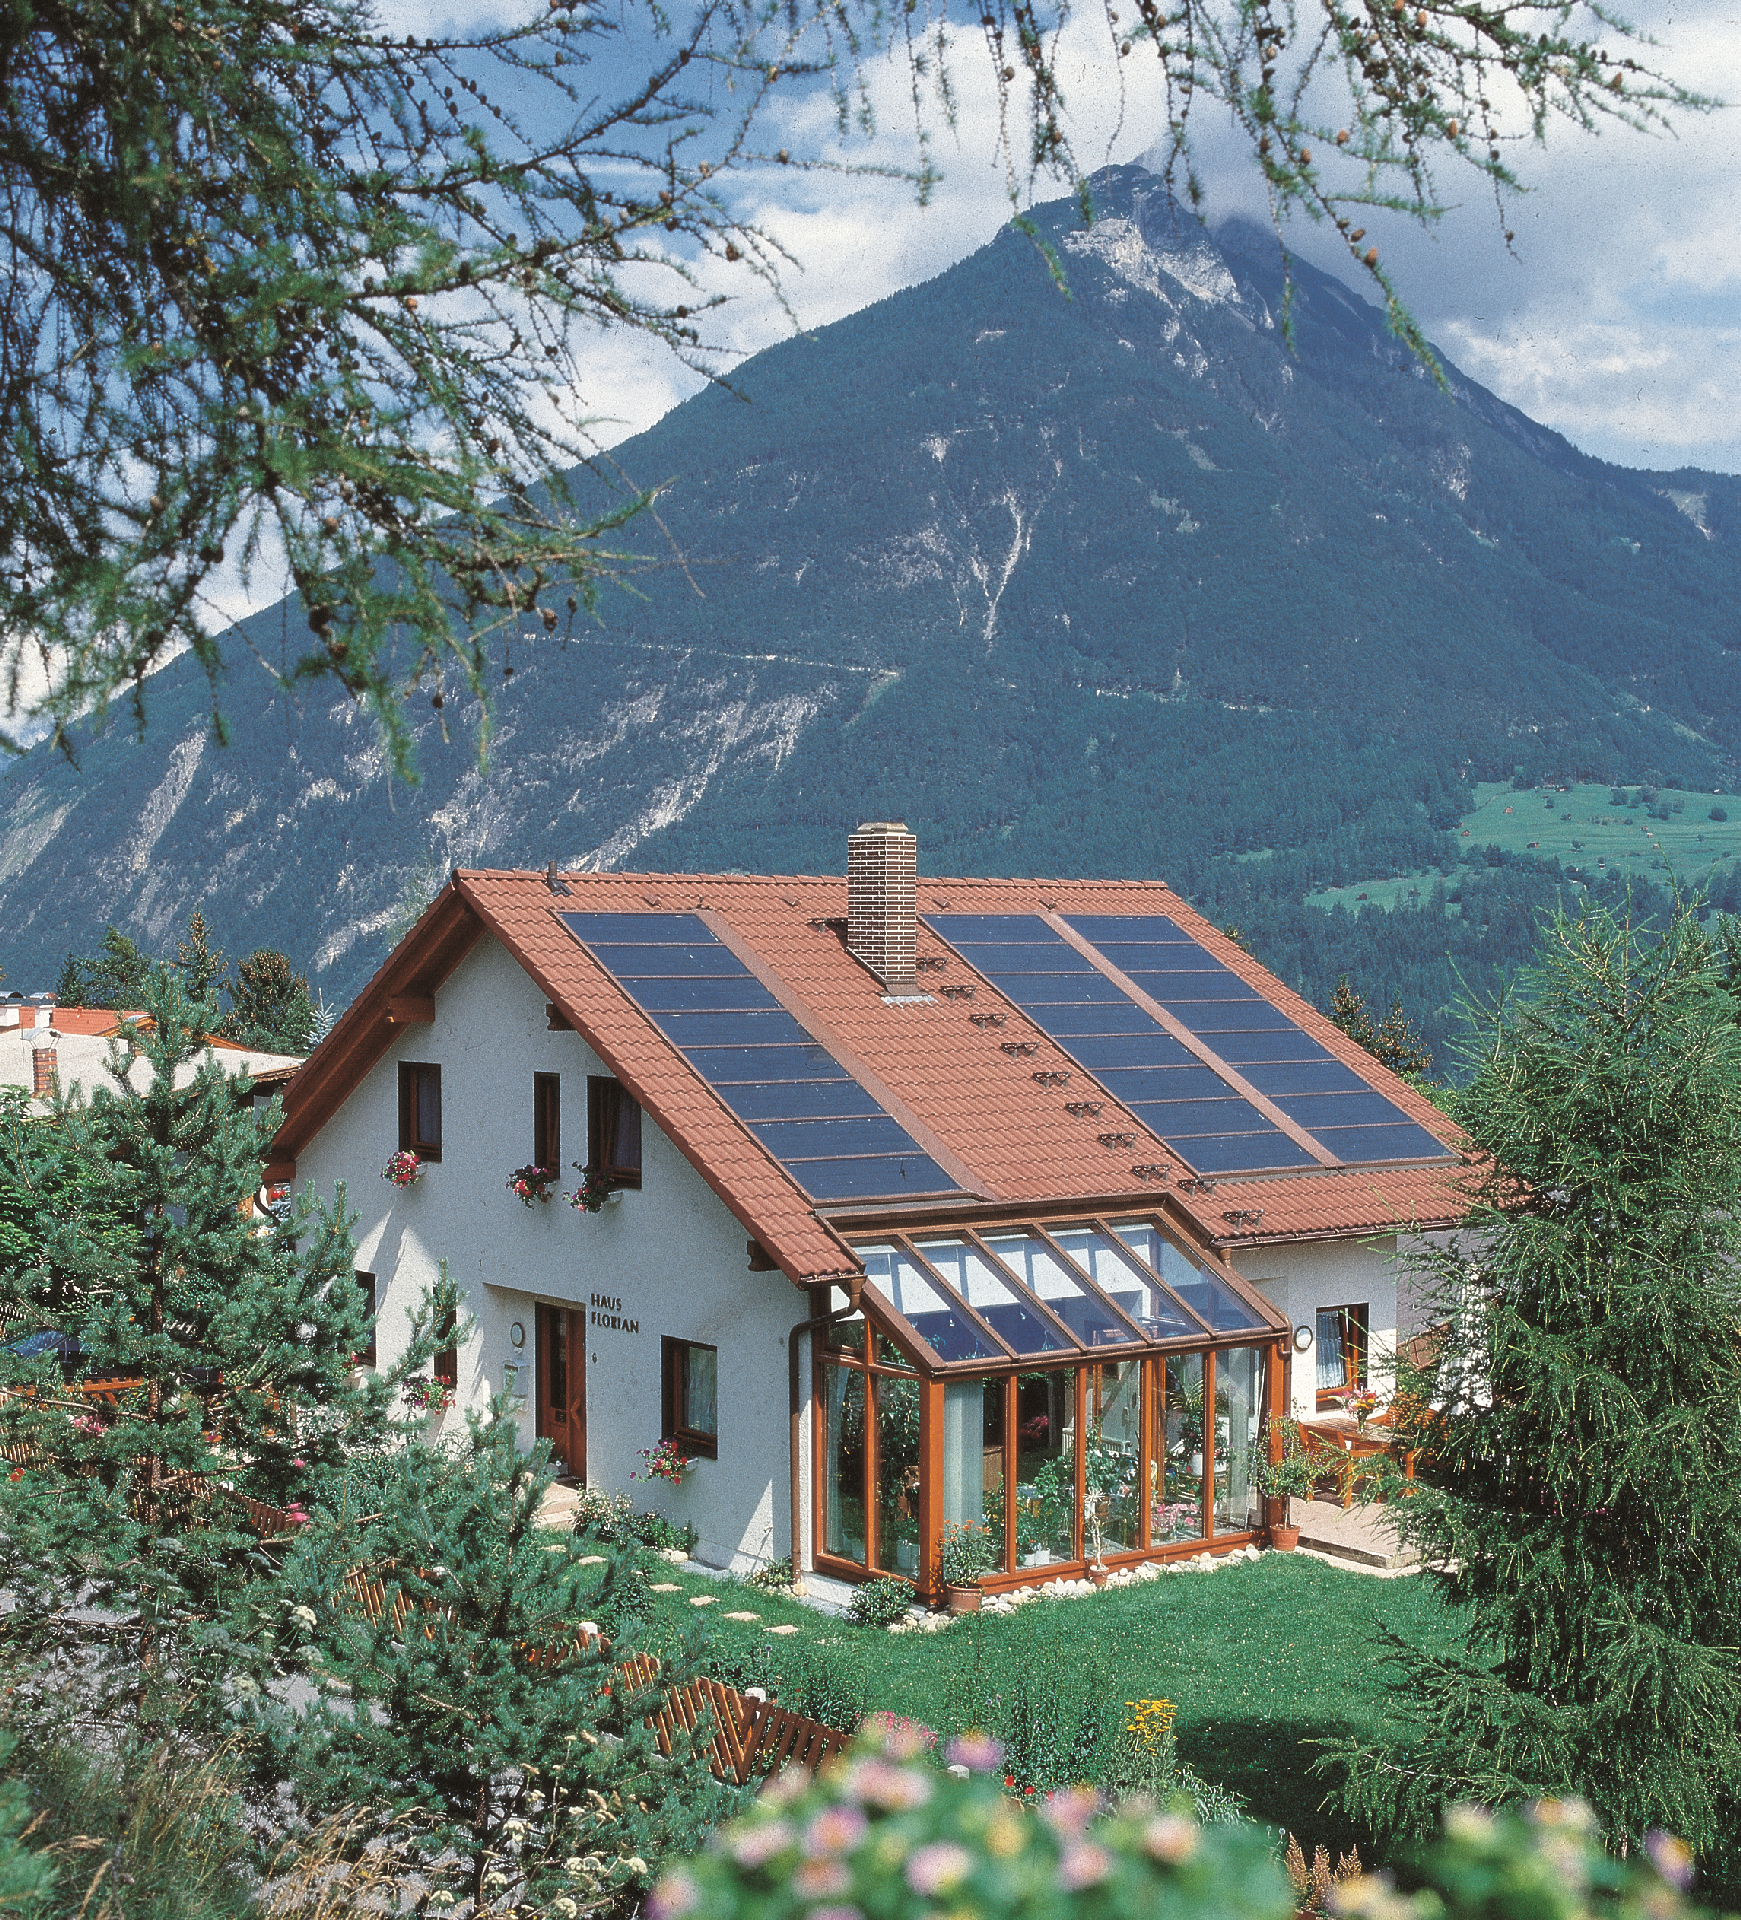 Wohnung in Gemeinde Imst mit Terrasse, Grill und G Ferienhaus in Österreich